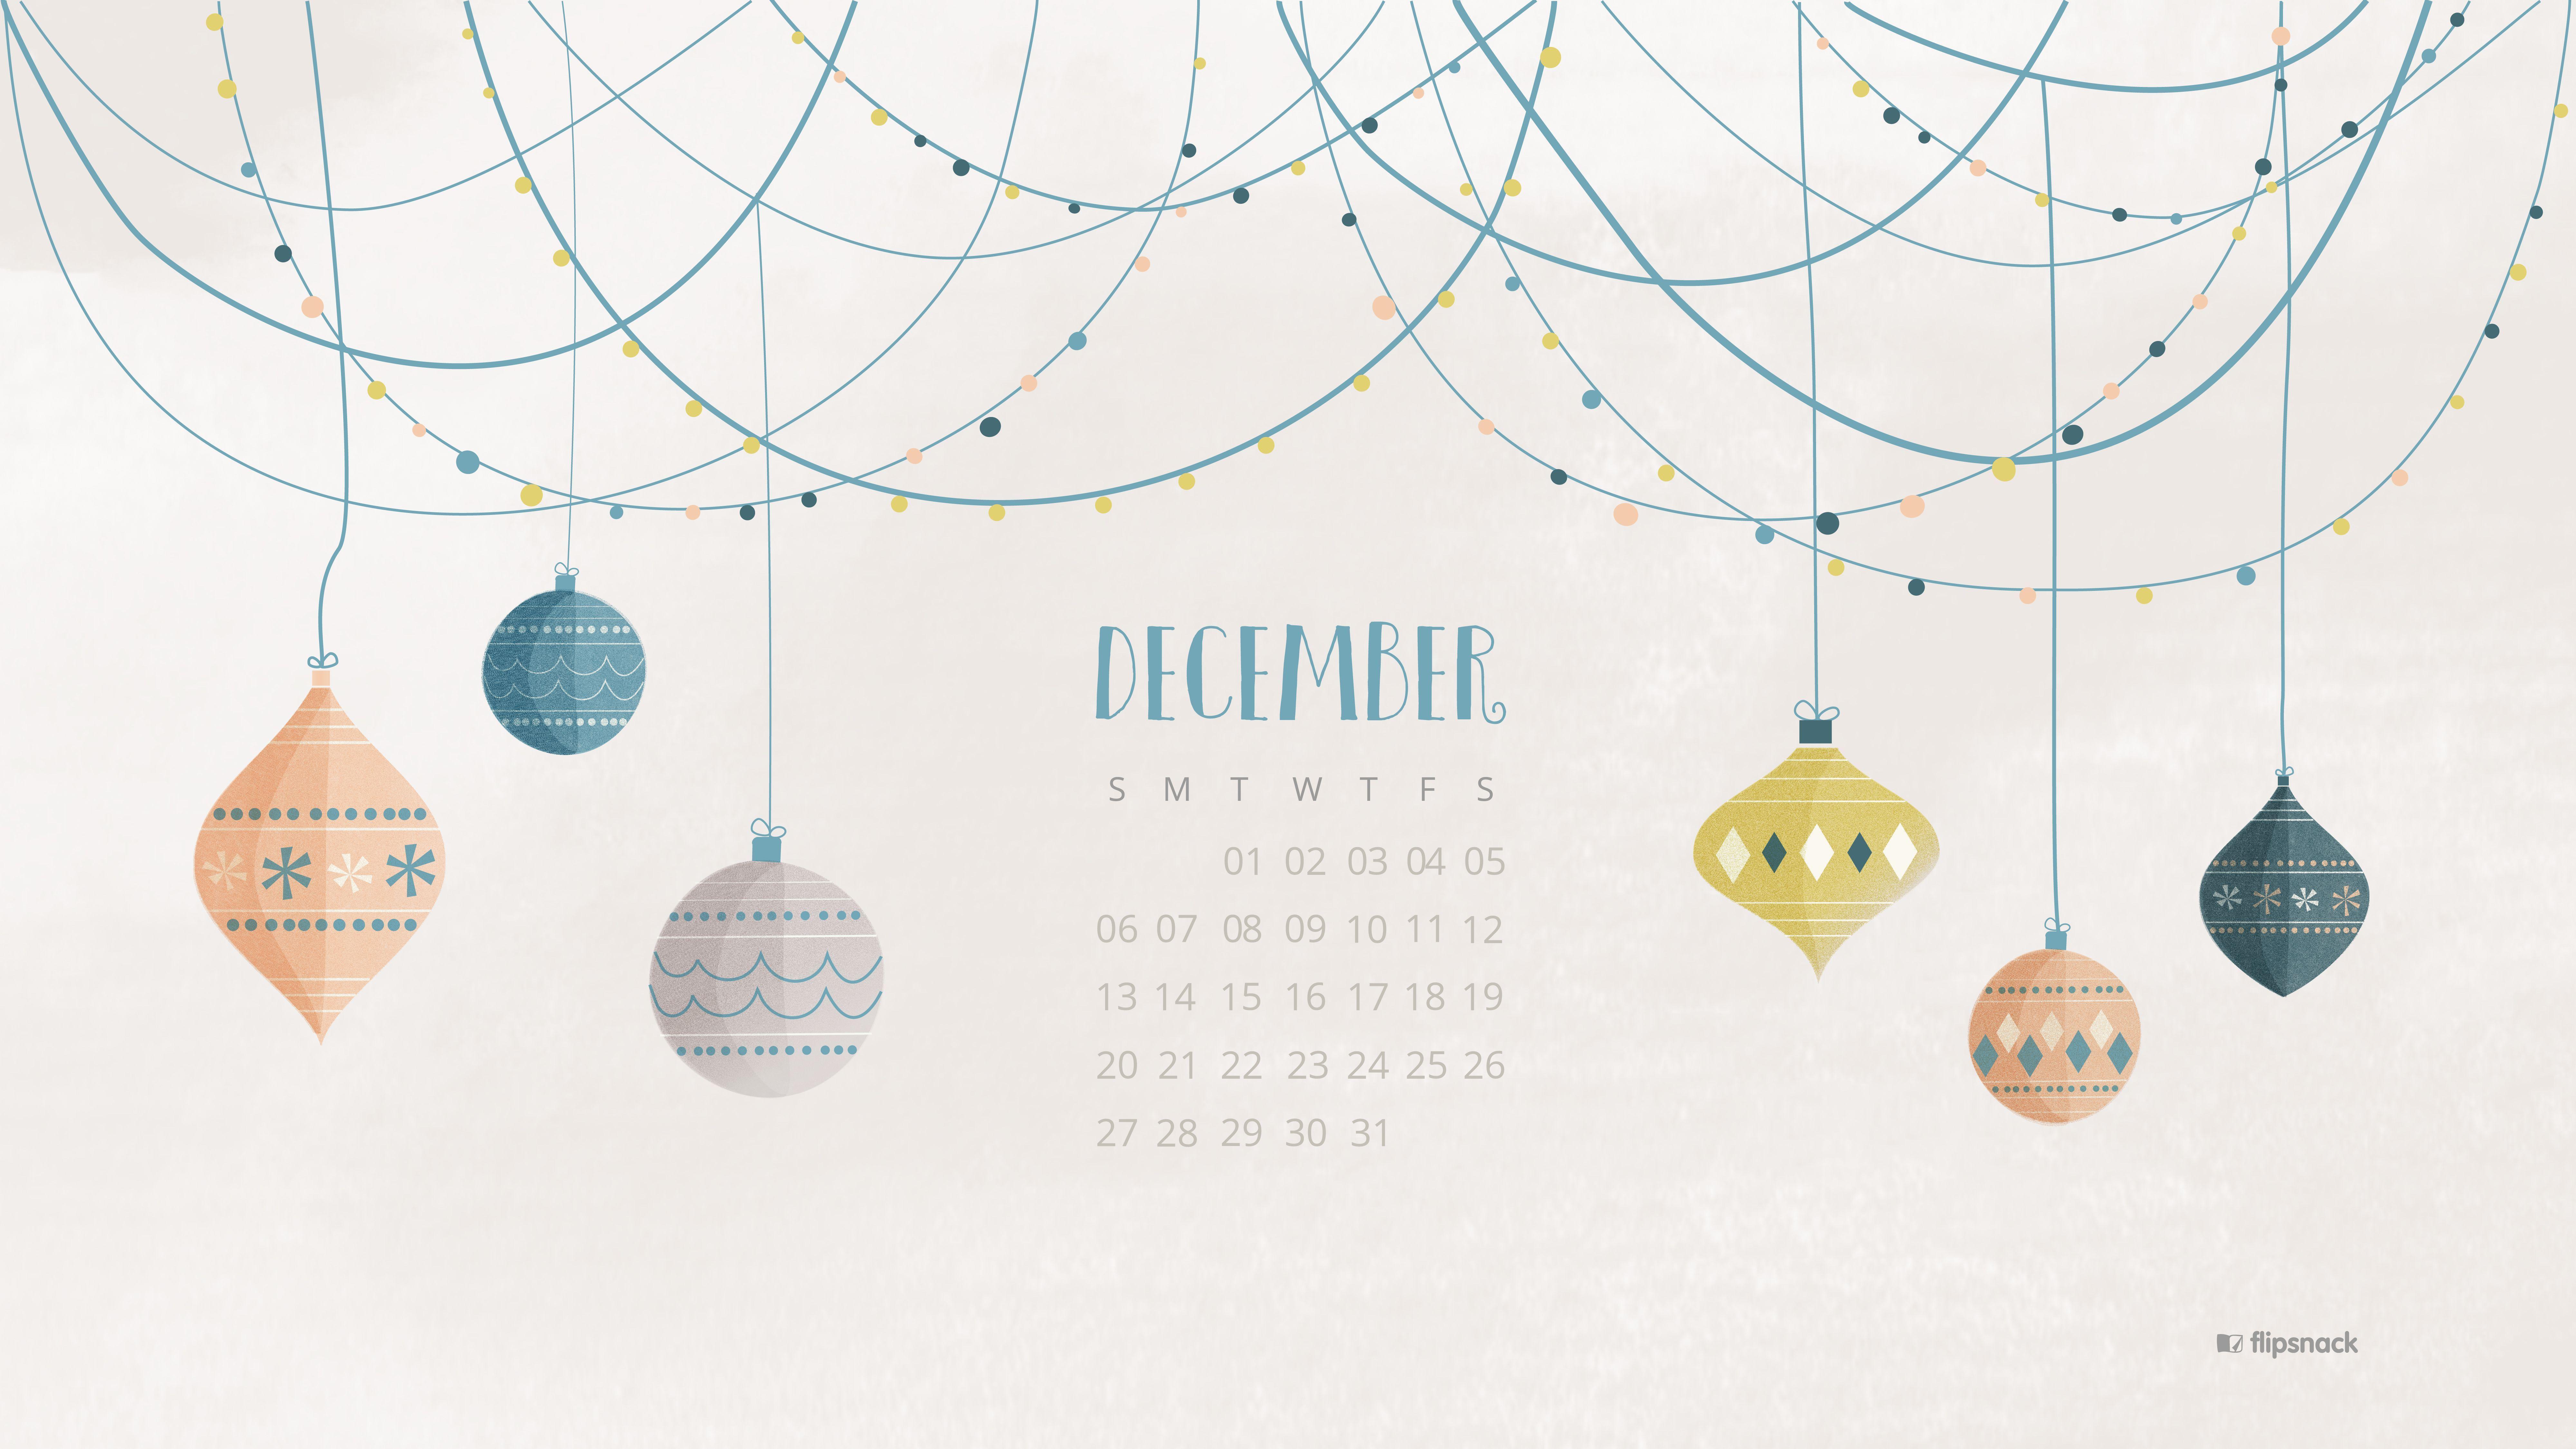 Freebies: December 2015 wallpaper calendars